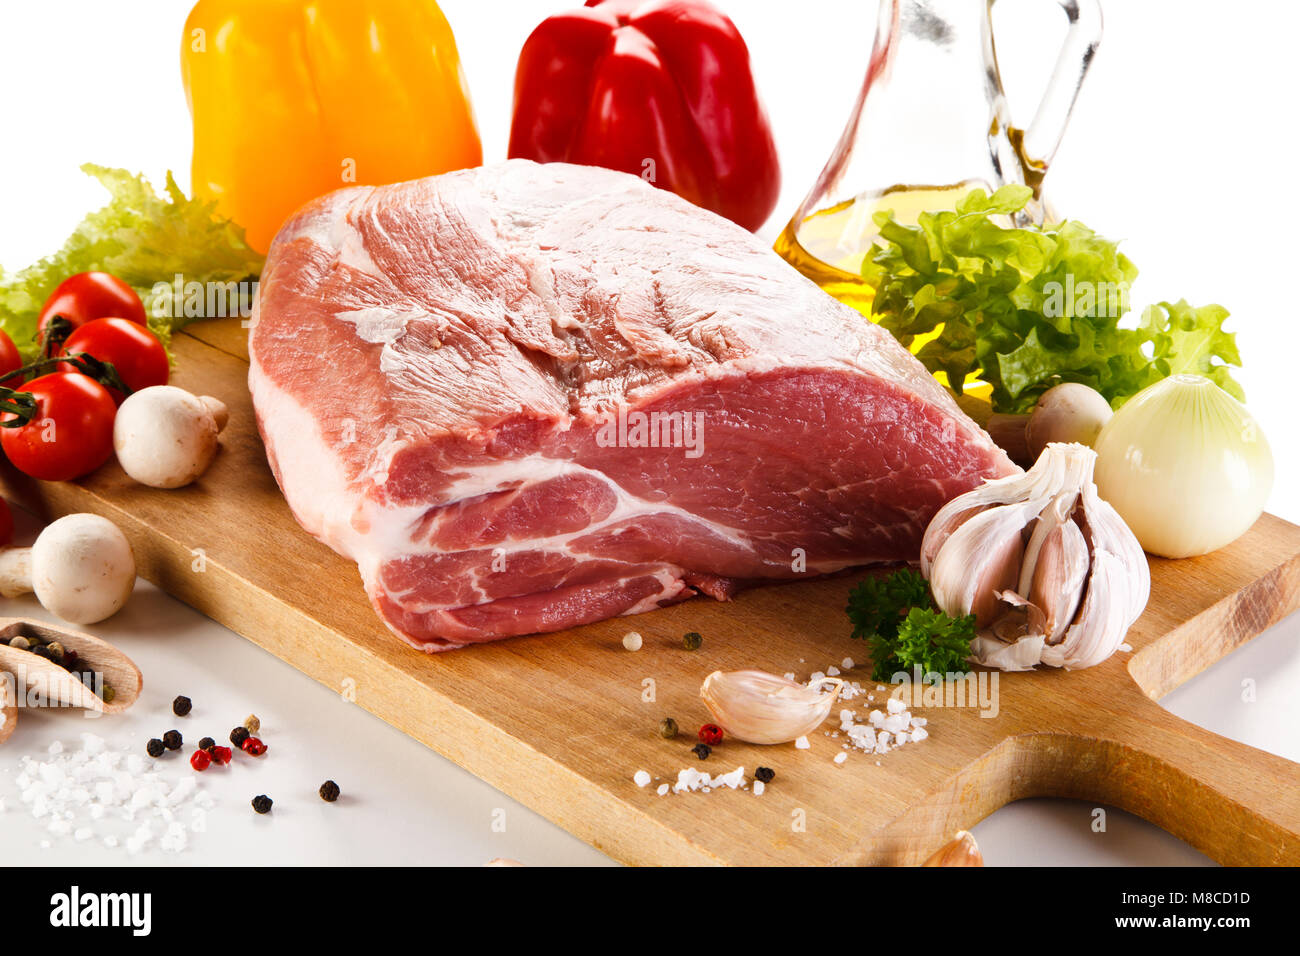 Raw pork on cutting board Stock Photo